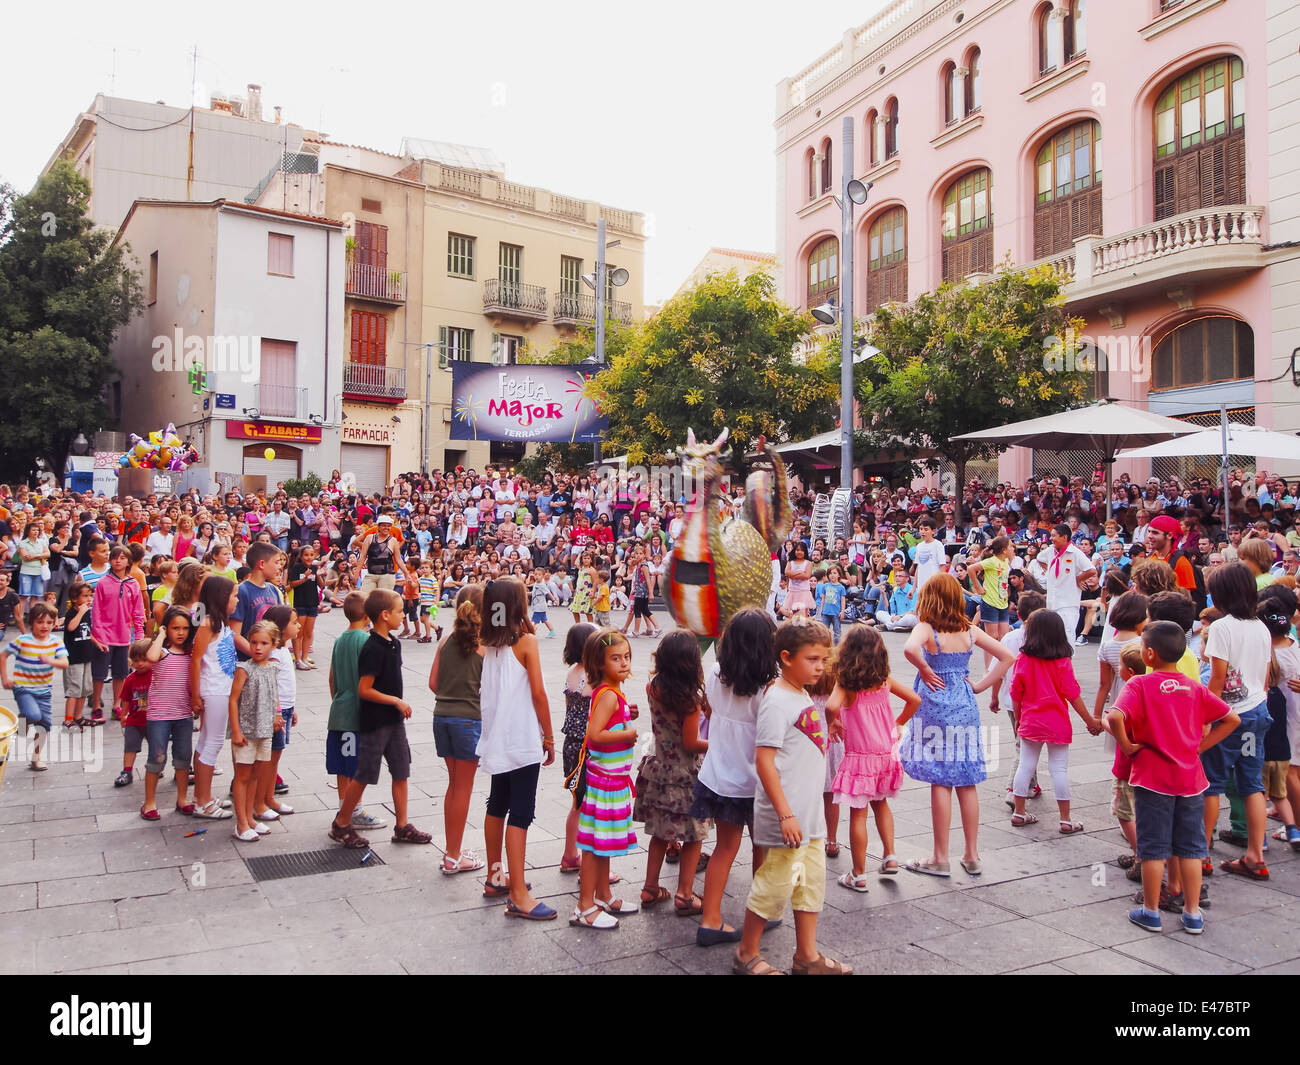 Festa Mayor de Terrassa 2013 - Catalan Party with many Traditional Parades and Shows in Terrassa, Catalonia, Spain. Stock Photo